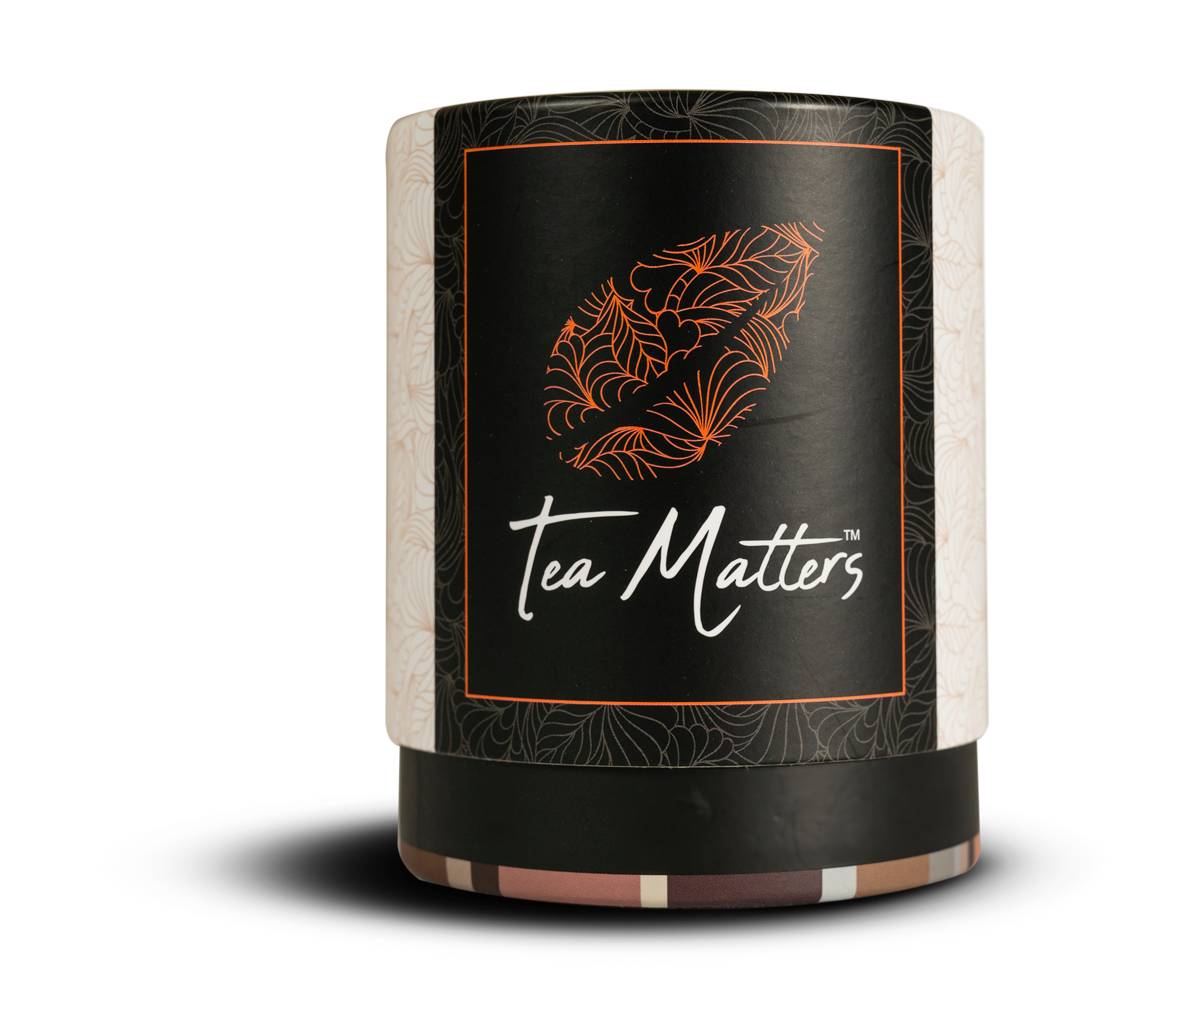 tea matters loose leaf tea canister